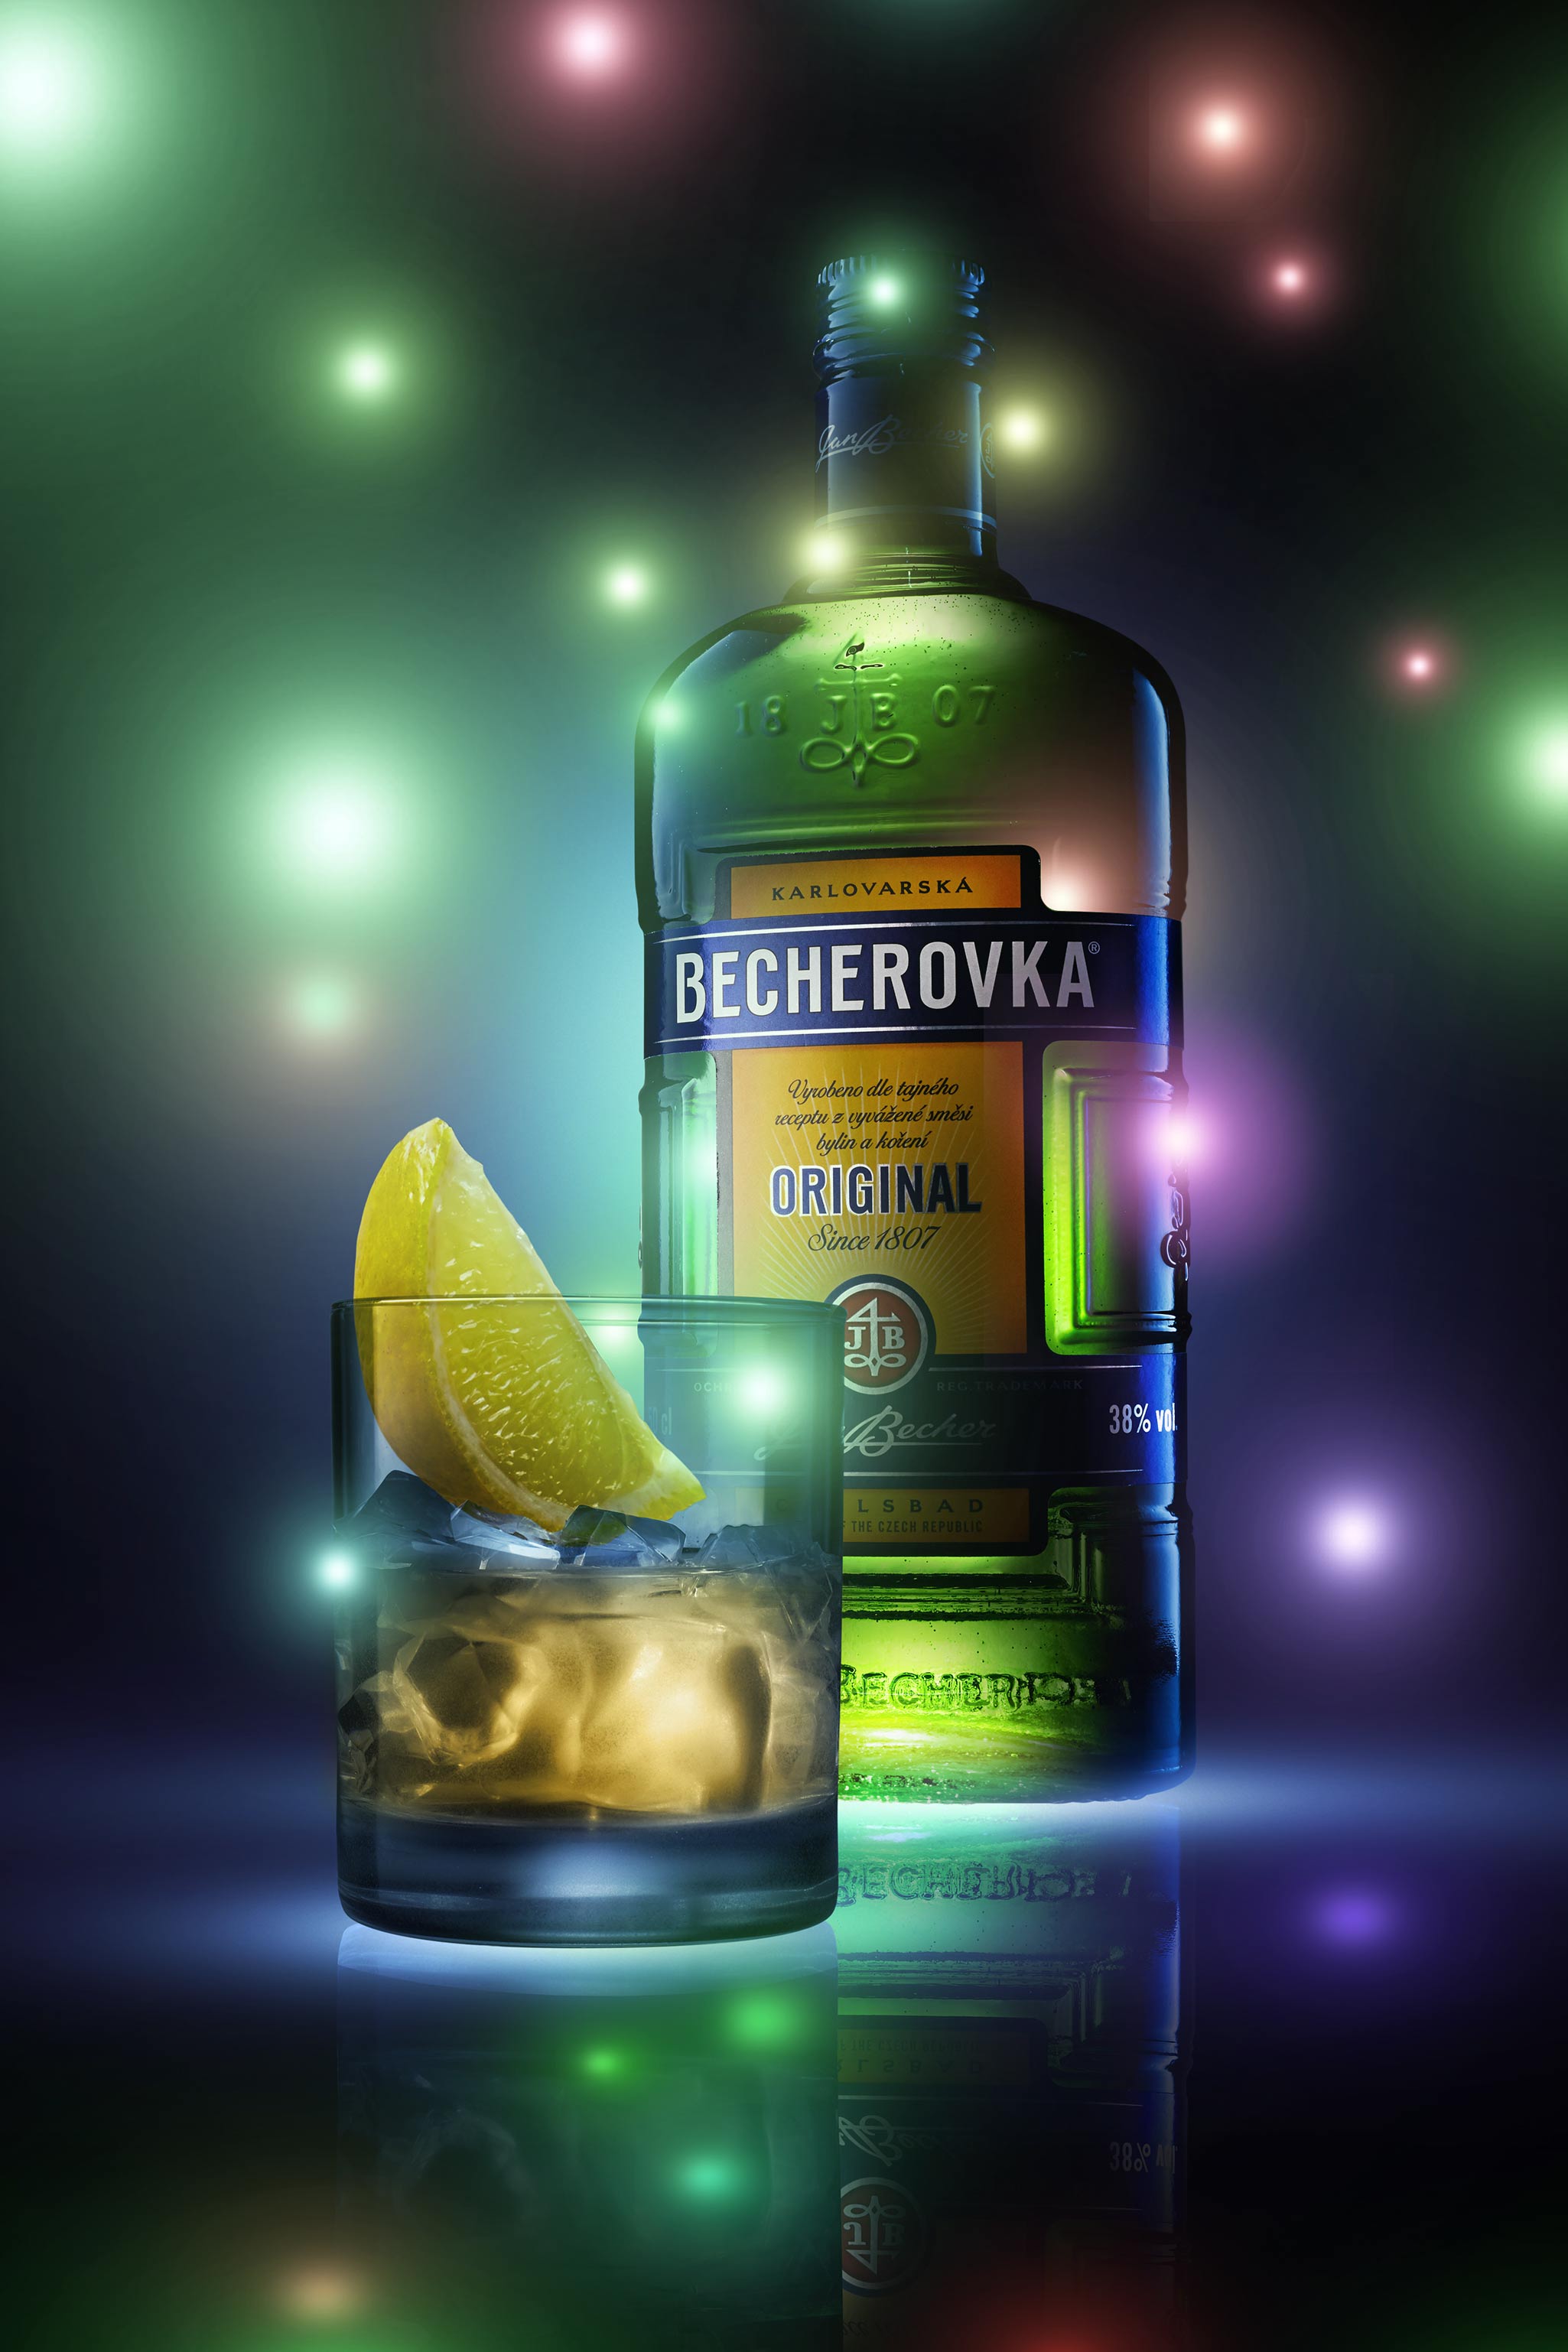 Magic in Adobe Photoshop: Retouching Beverage photo with Ilya Plotnikov